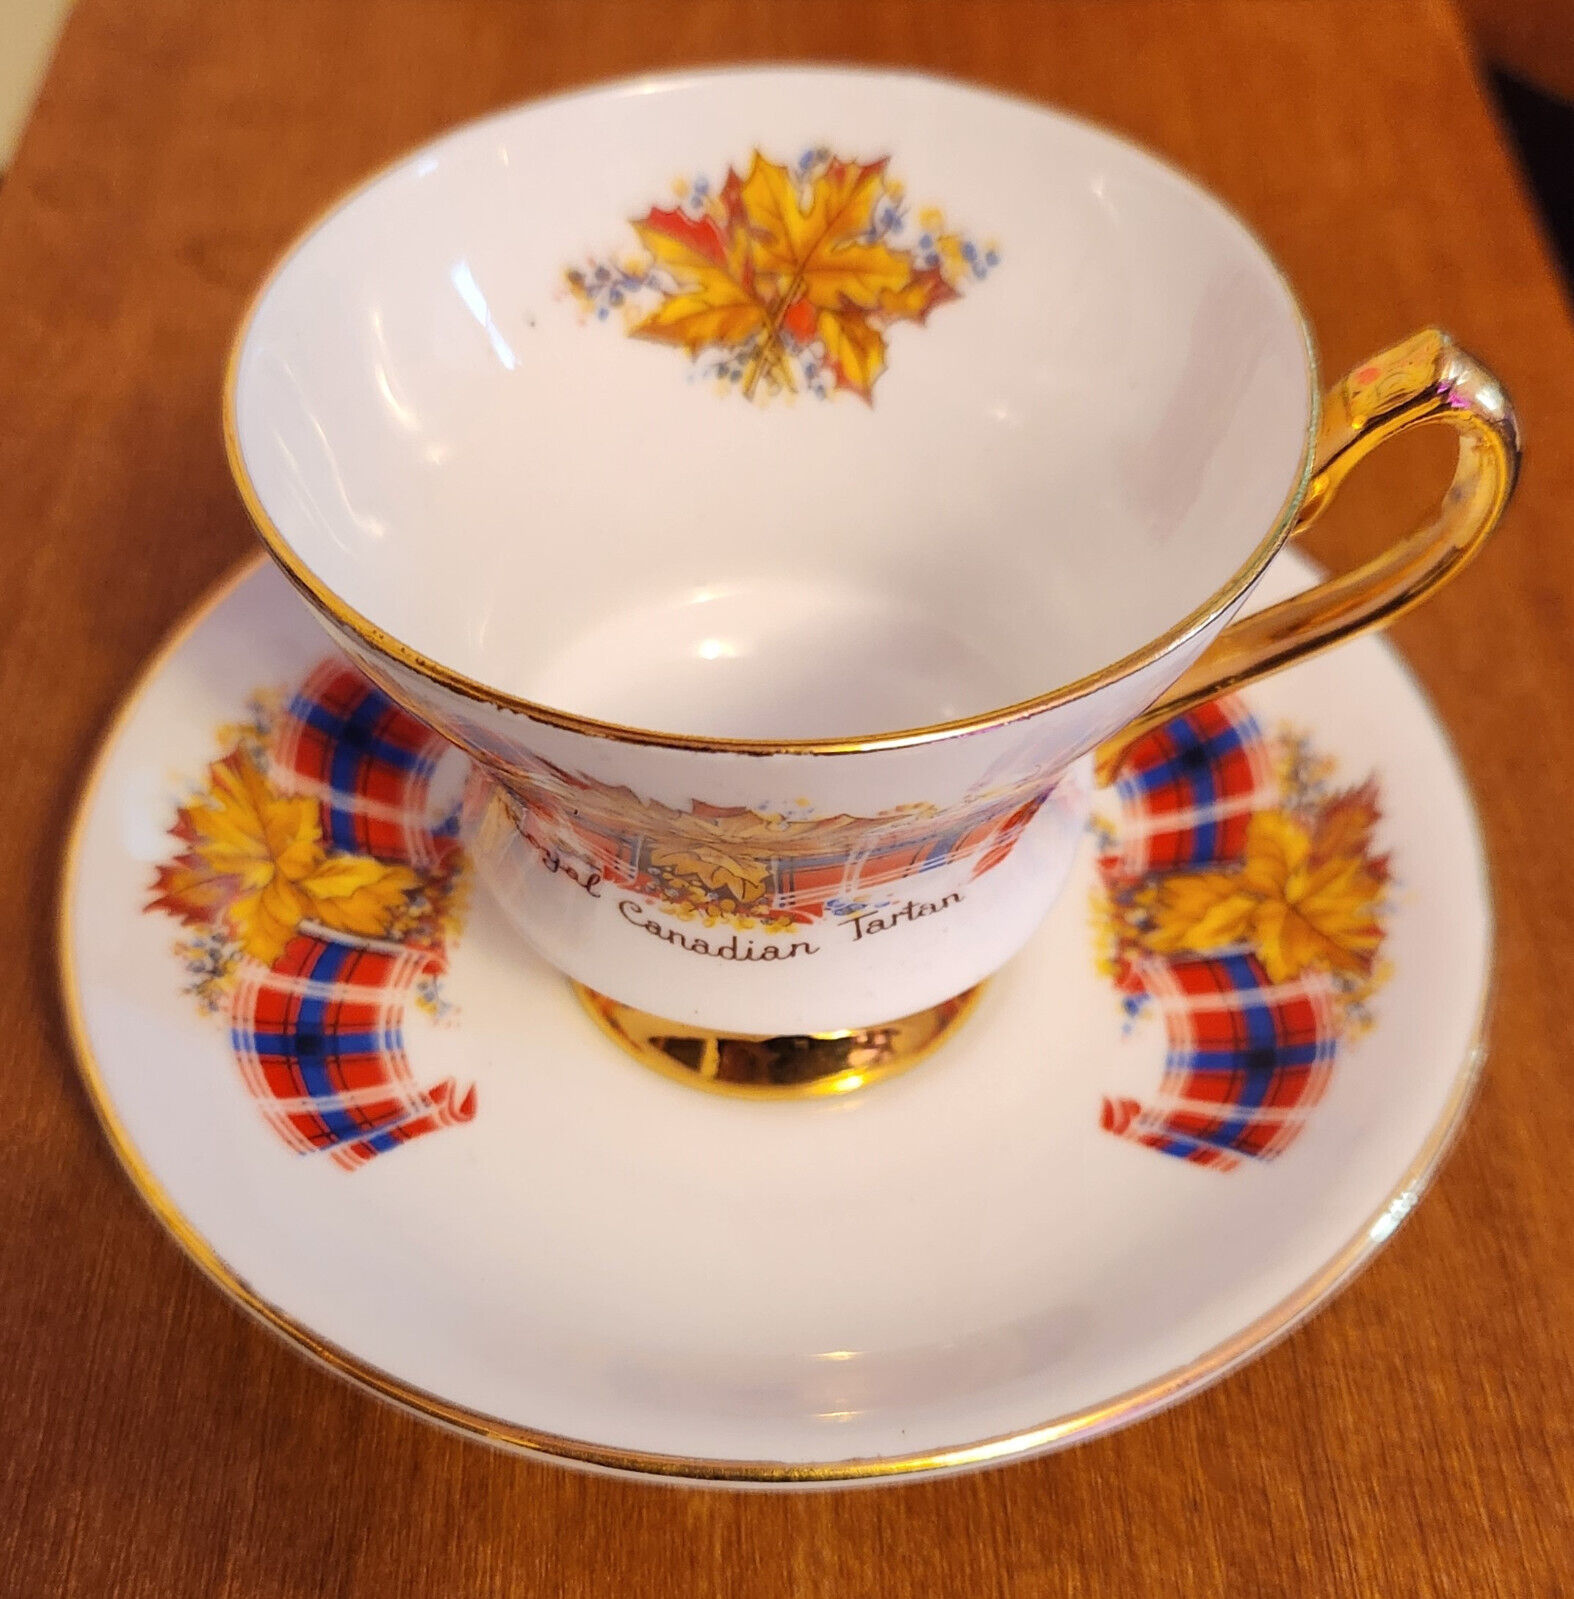 VINTAGE WINDSOR TEA CUP & SAUCER - ROYAL CANADIAN TARTAN - ENGLAND  --- Lot 1677